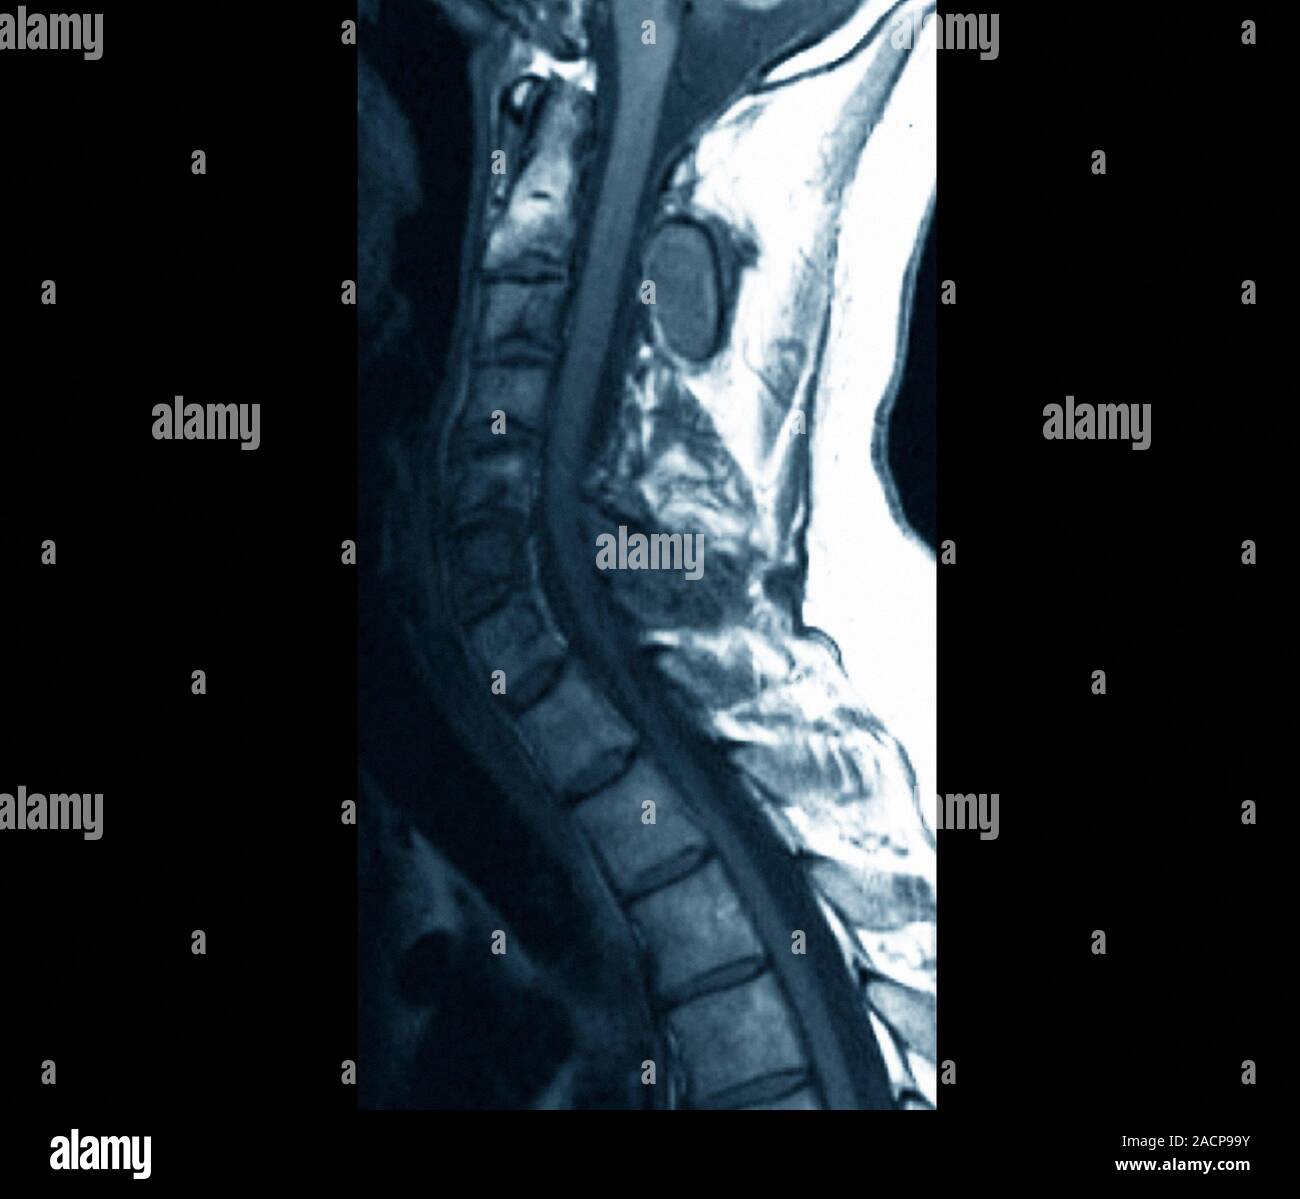 El crecimiento óseo anormal. Imágenes por resonancia magnética (IRM) de una  sección a través de la columna cervical (cuello) de un paciente de 28 años,  mostrando anormal Fotografía de stock - Alamy